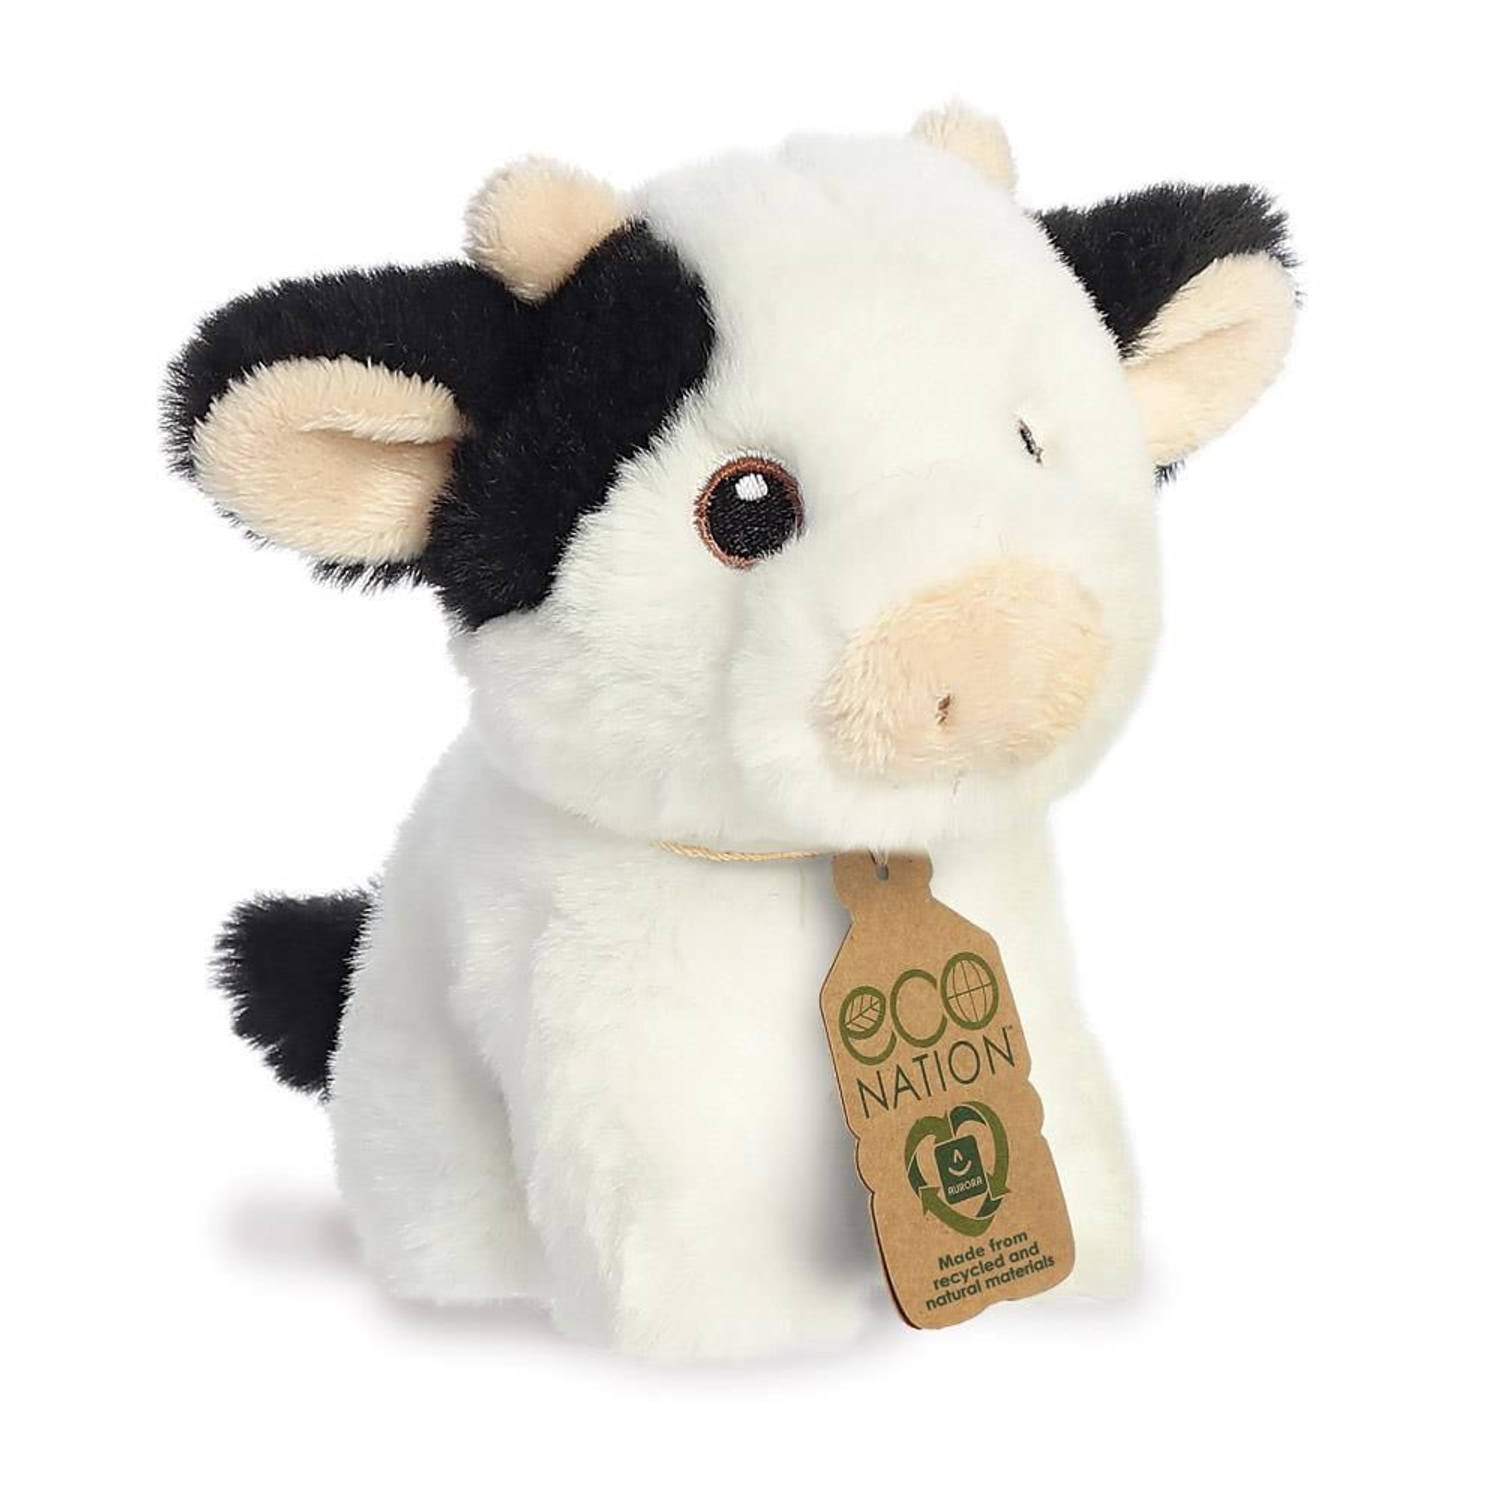 Aurora Pluche dieren knuffels koe van 13 cm - Knuffeldieren koeien speelgoed